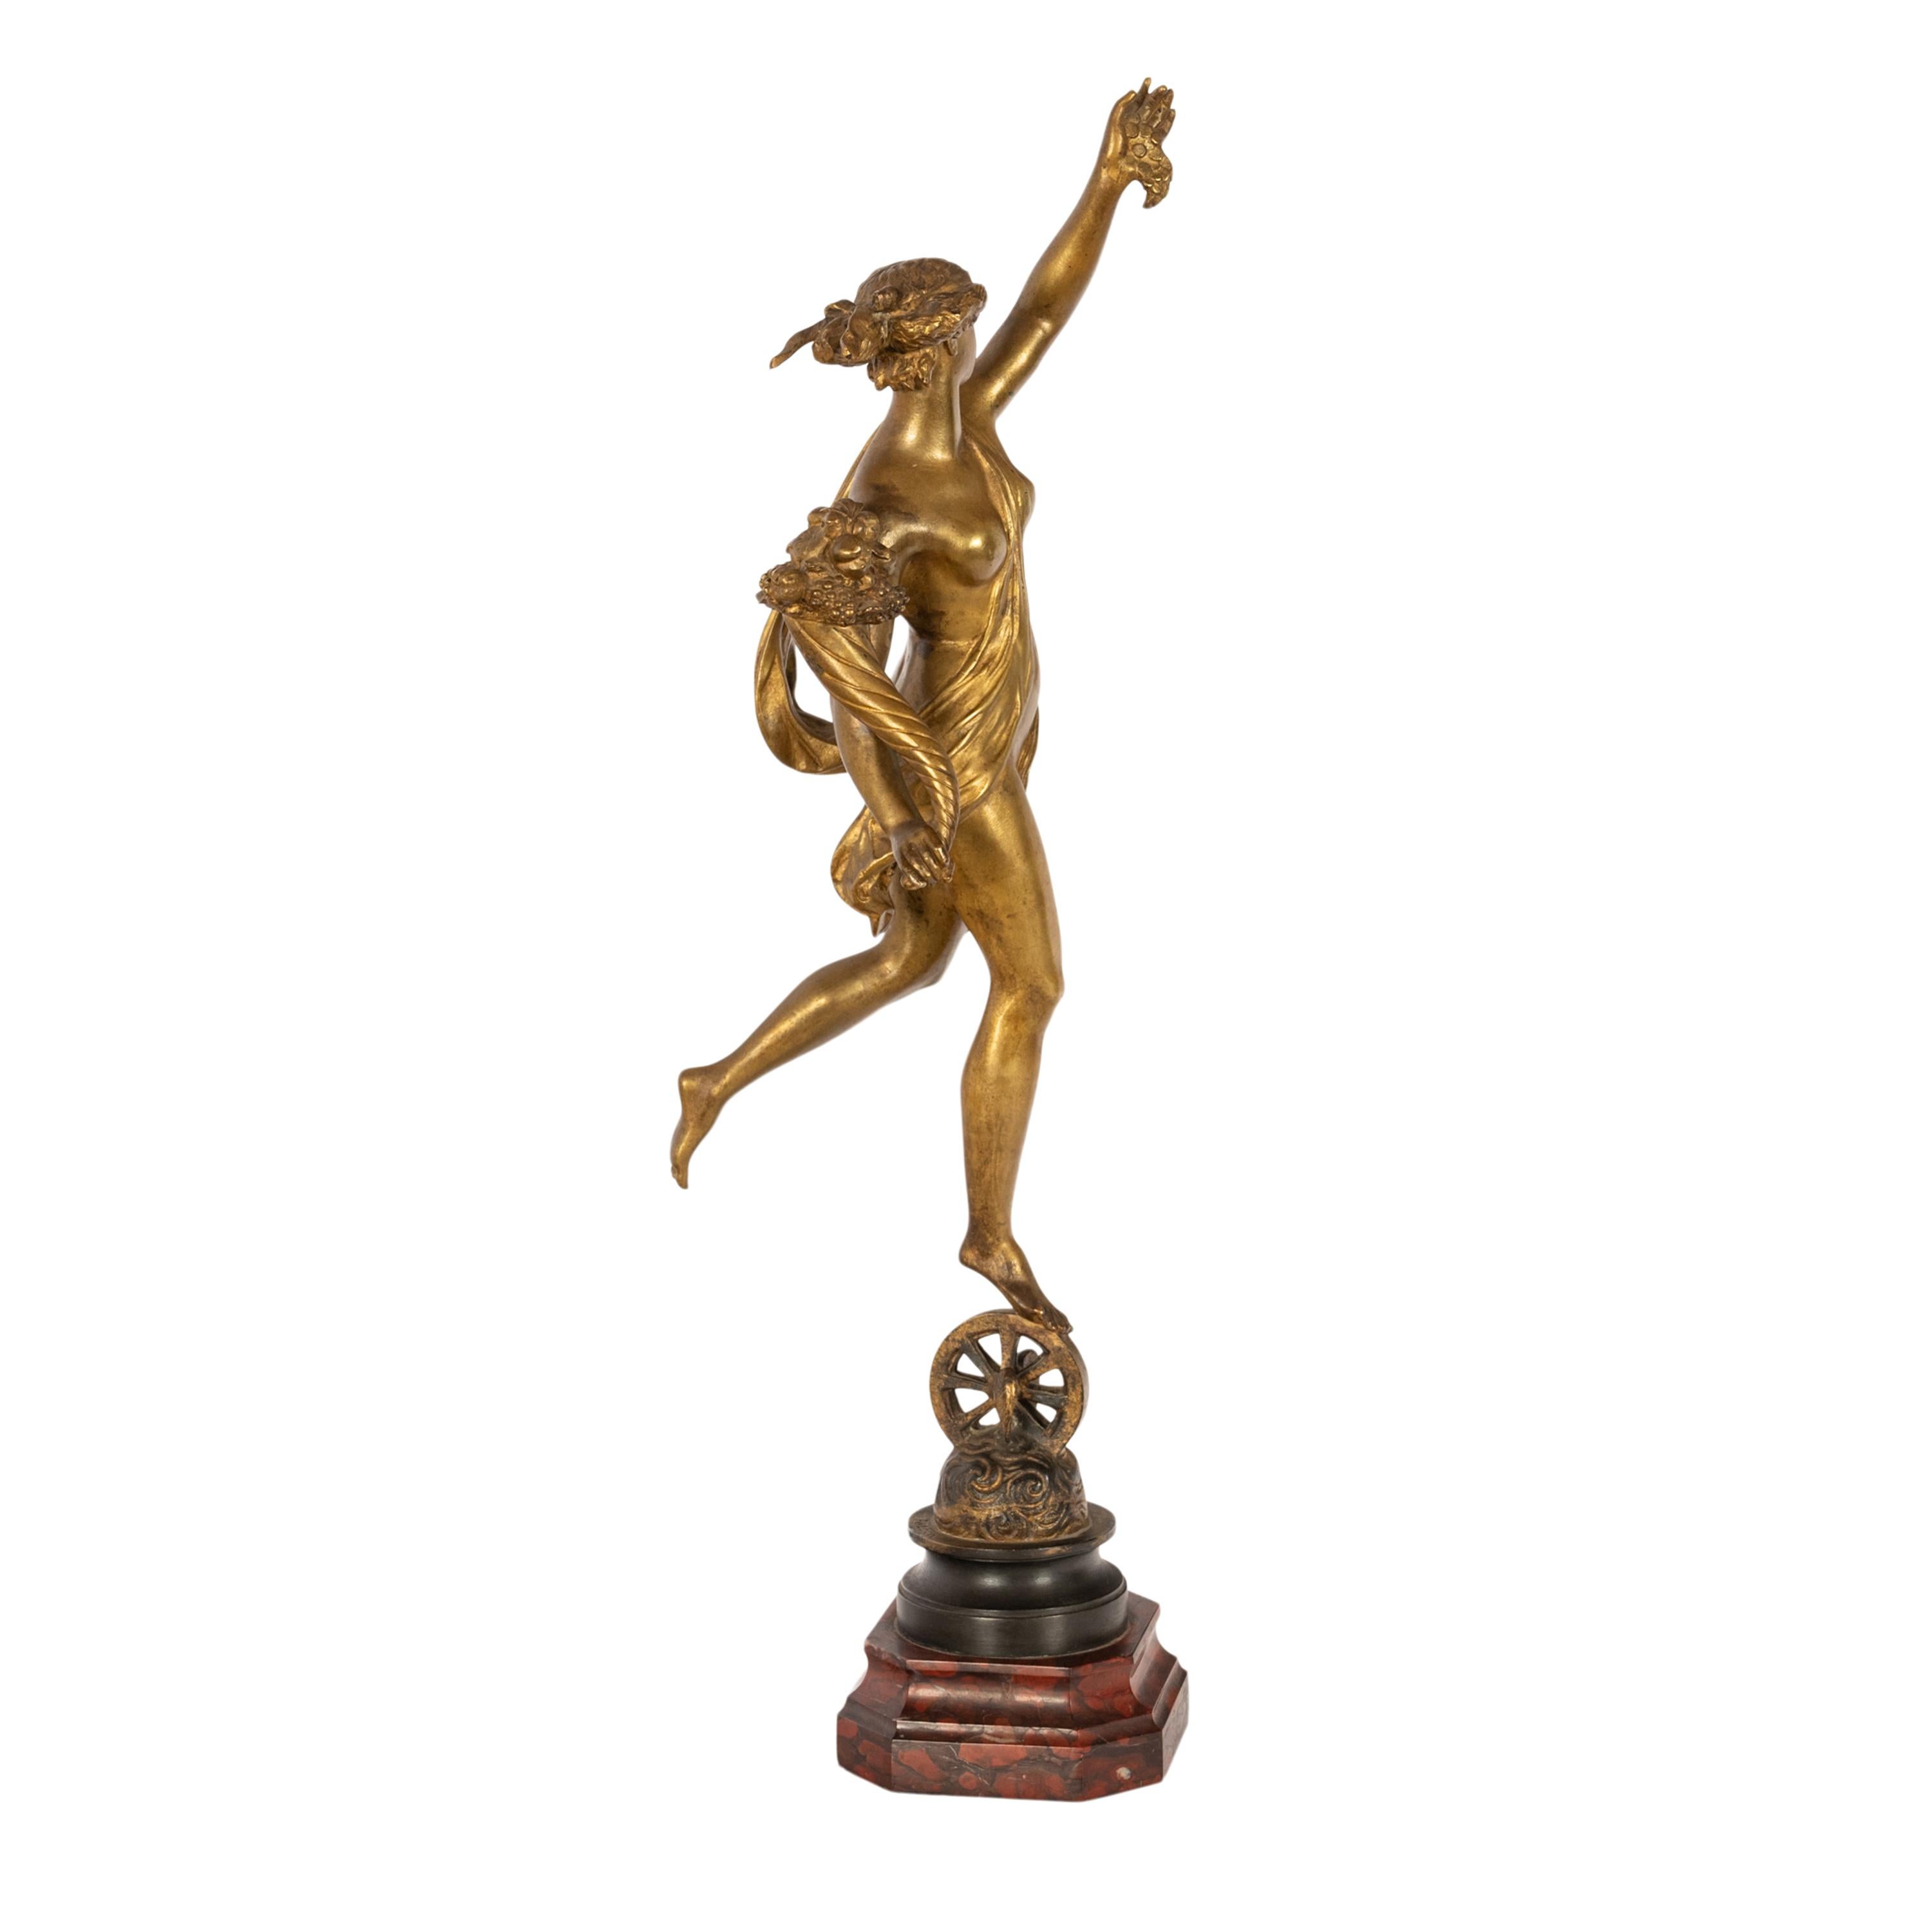 Eine sehr gute große antike französische vergoldete Bronze der römischen Göttin Fortuna, von Louis Guillaume Fulconis (1818-1873), um 1860.
Die Bronze ist von den Skulpturen des italienischen Renaissance-Bildhauers Giambologna (1529-1608)